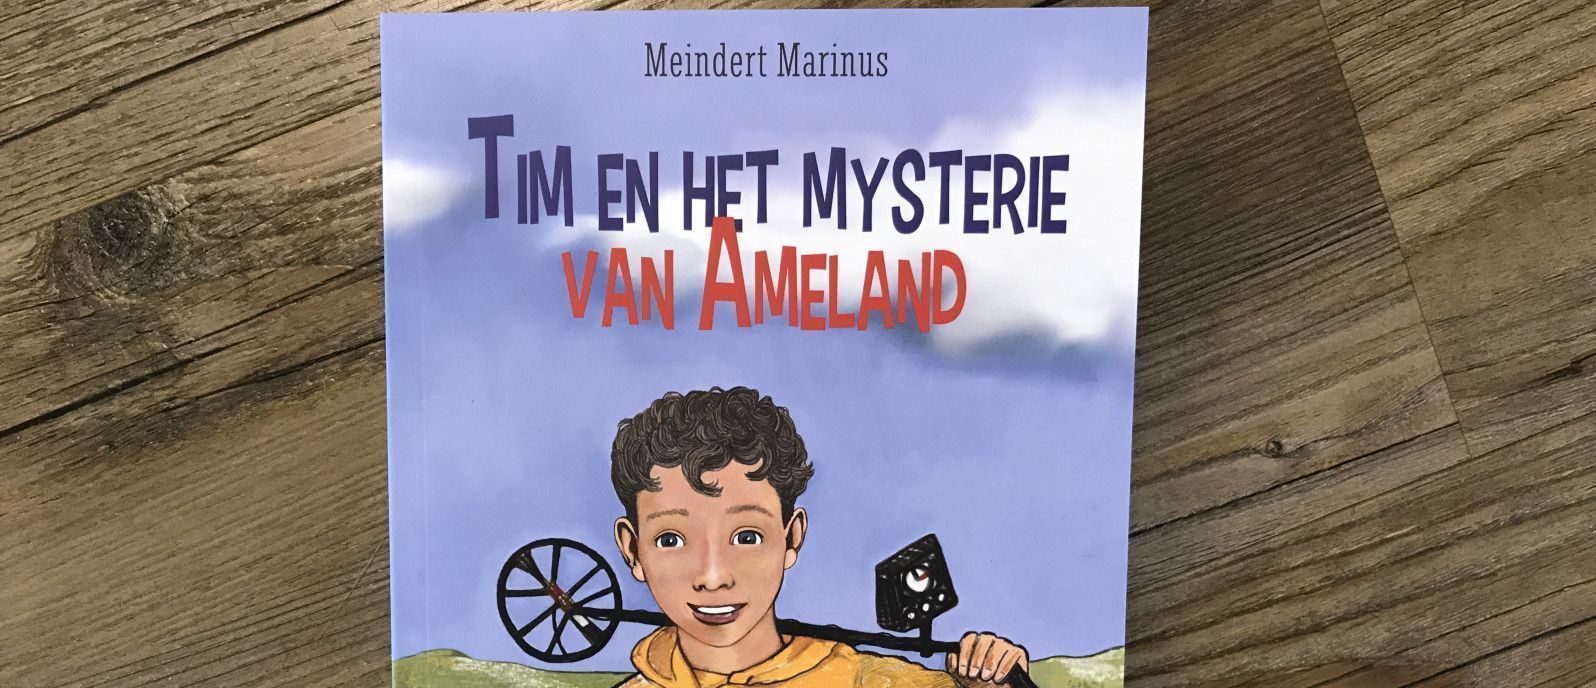 Tim en het mysterie van Ameland - webshop VVV Ameland